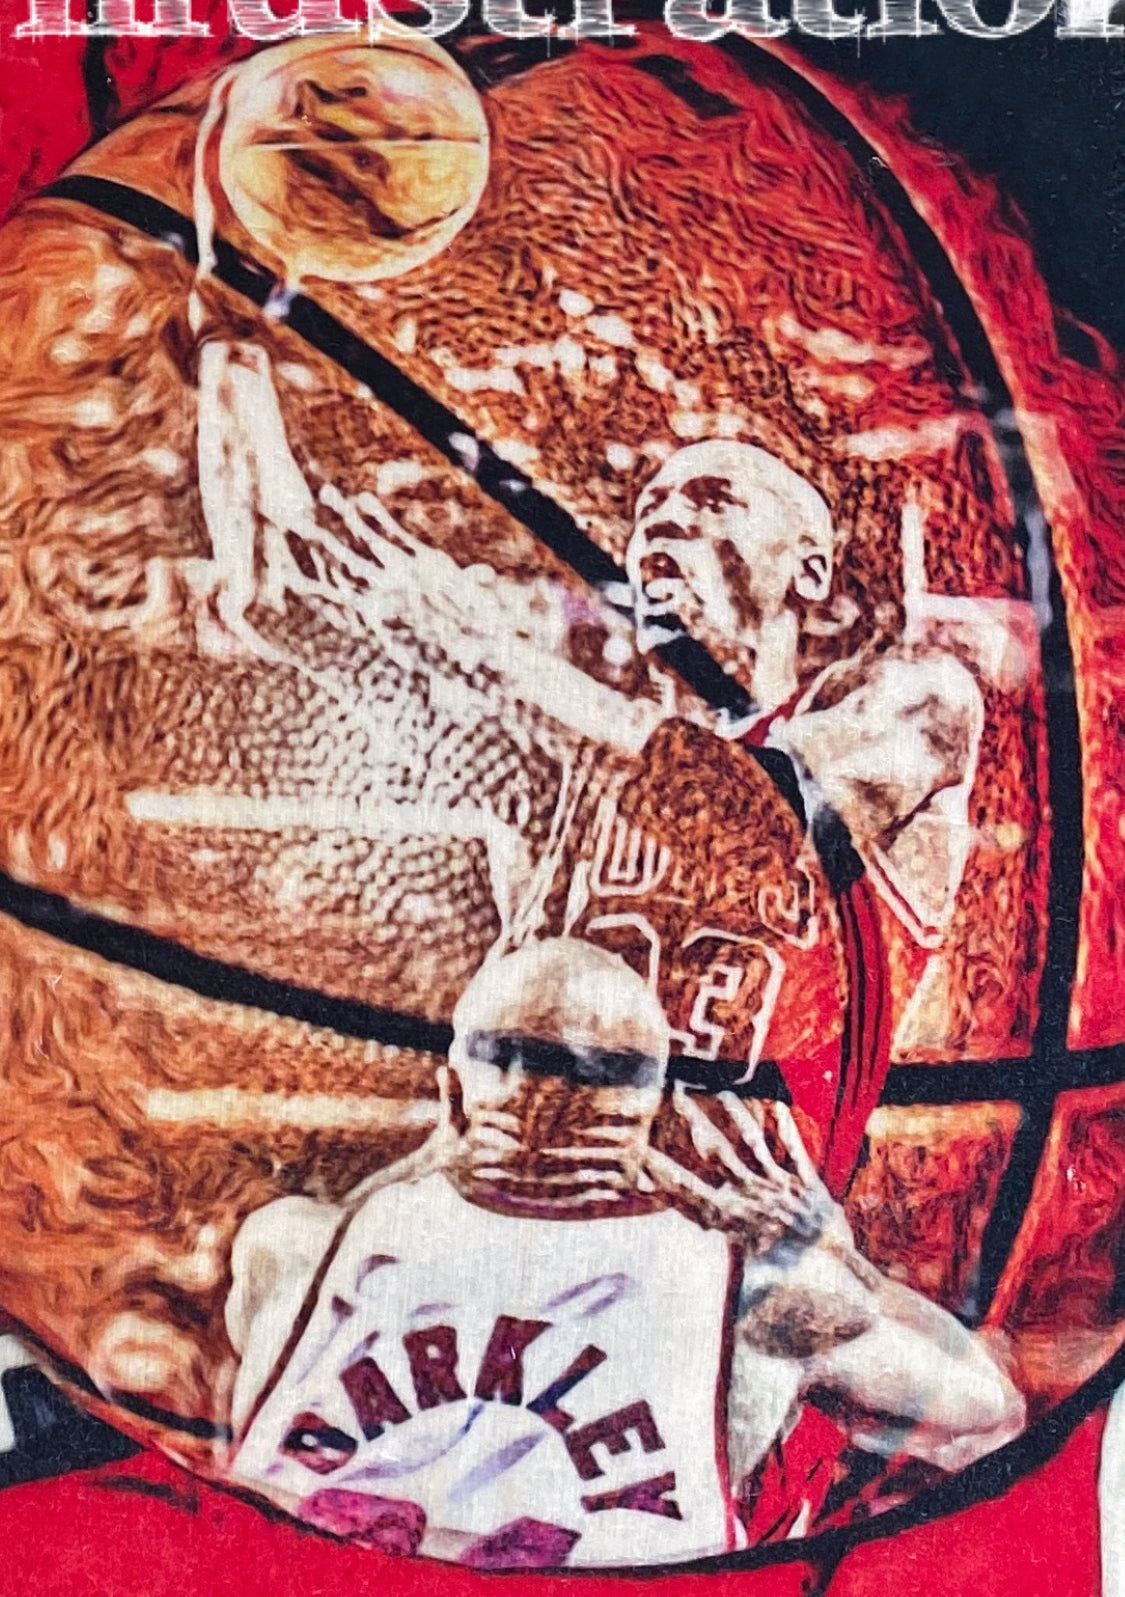 "1993" (Michael Jordan) Chicago Bulls - 1/1 ORIGINAL on Birchwood